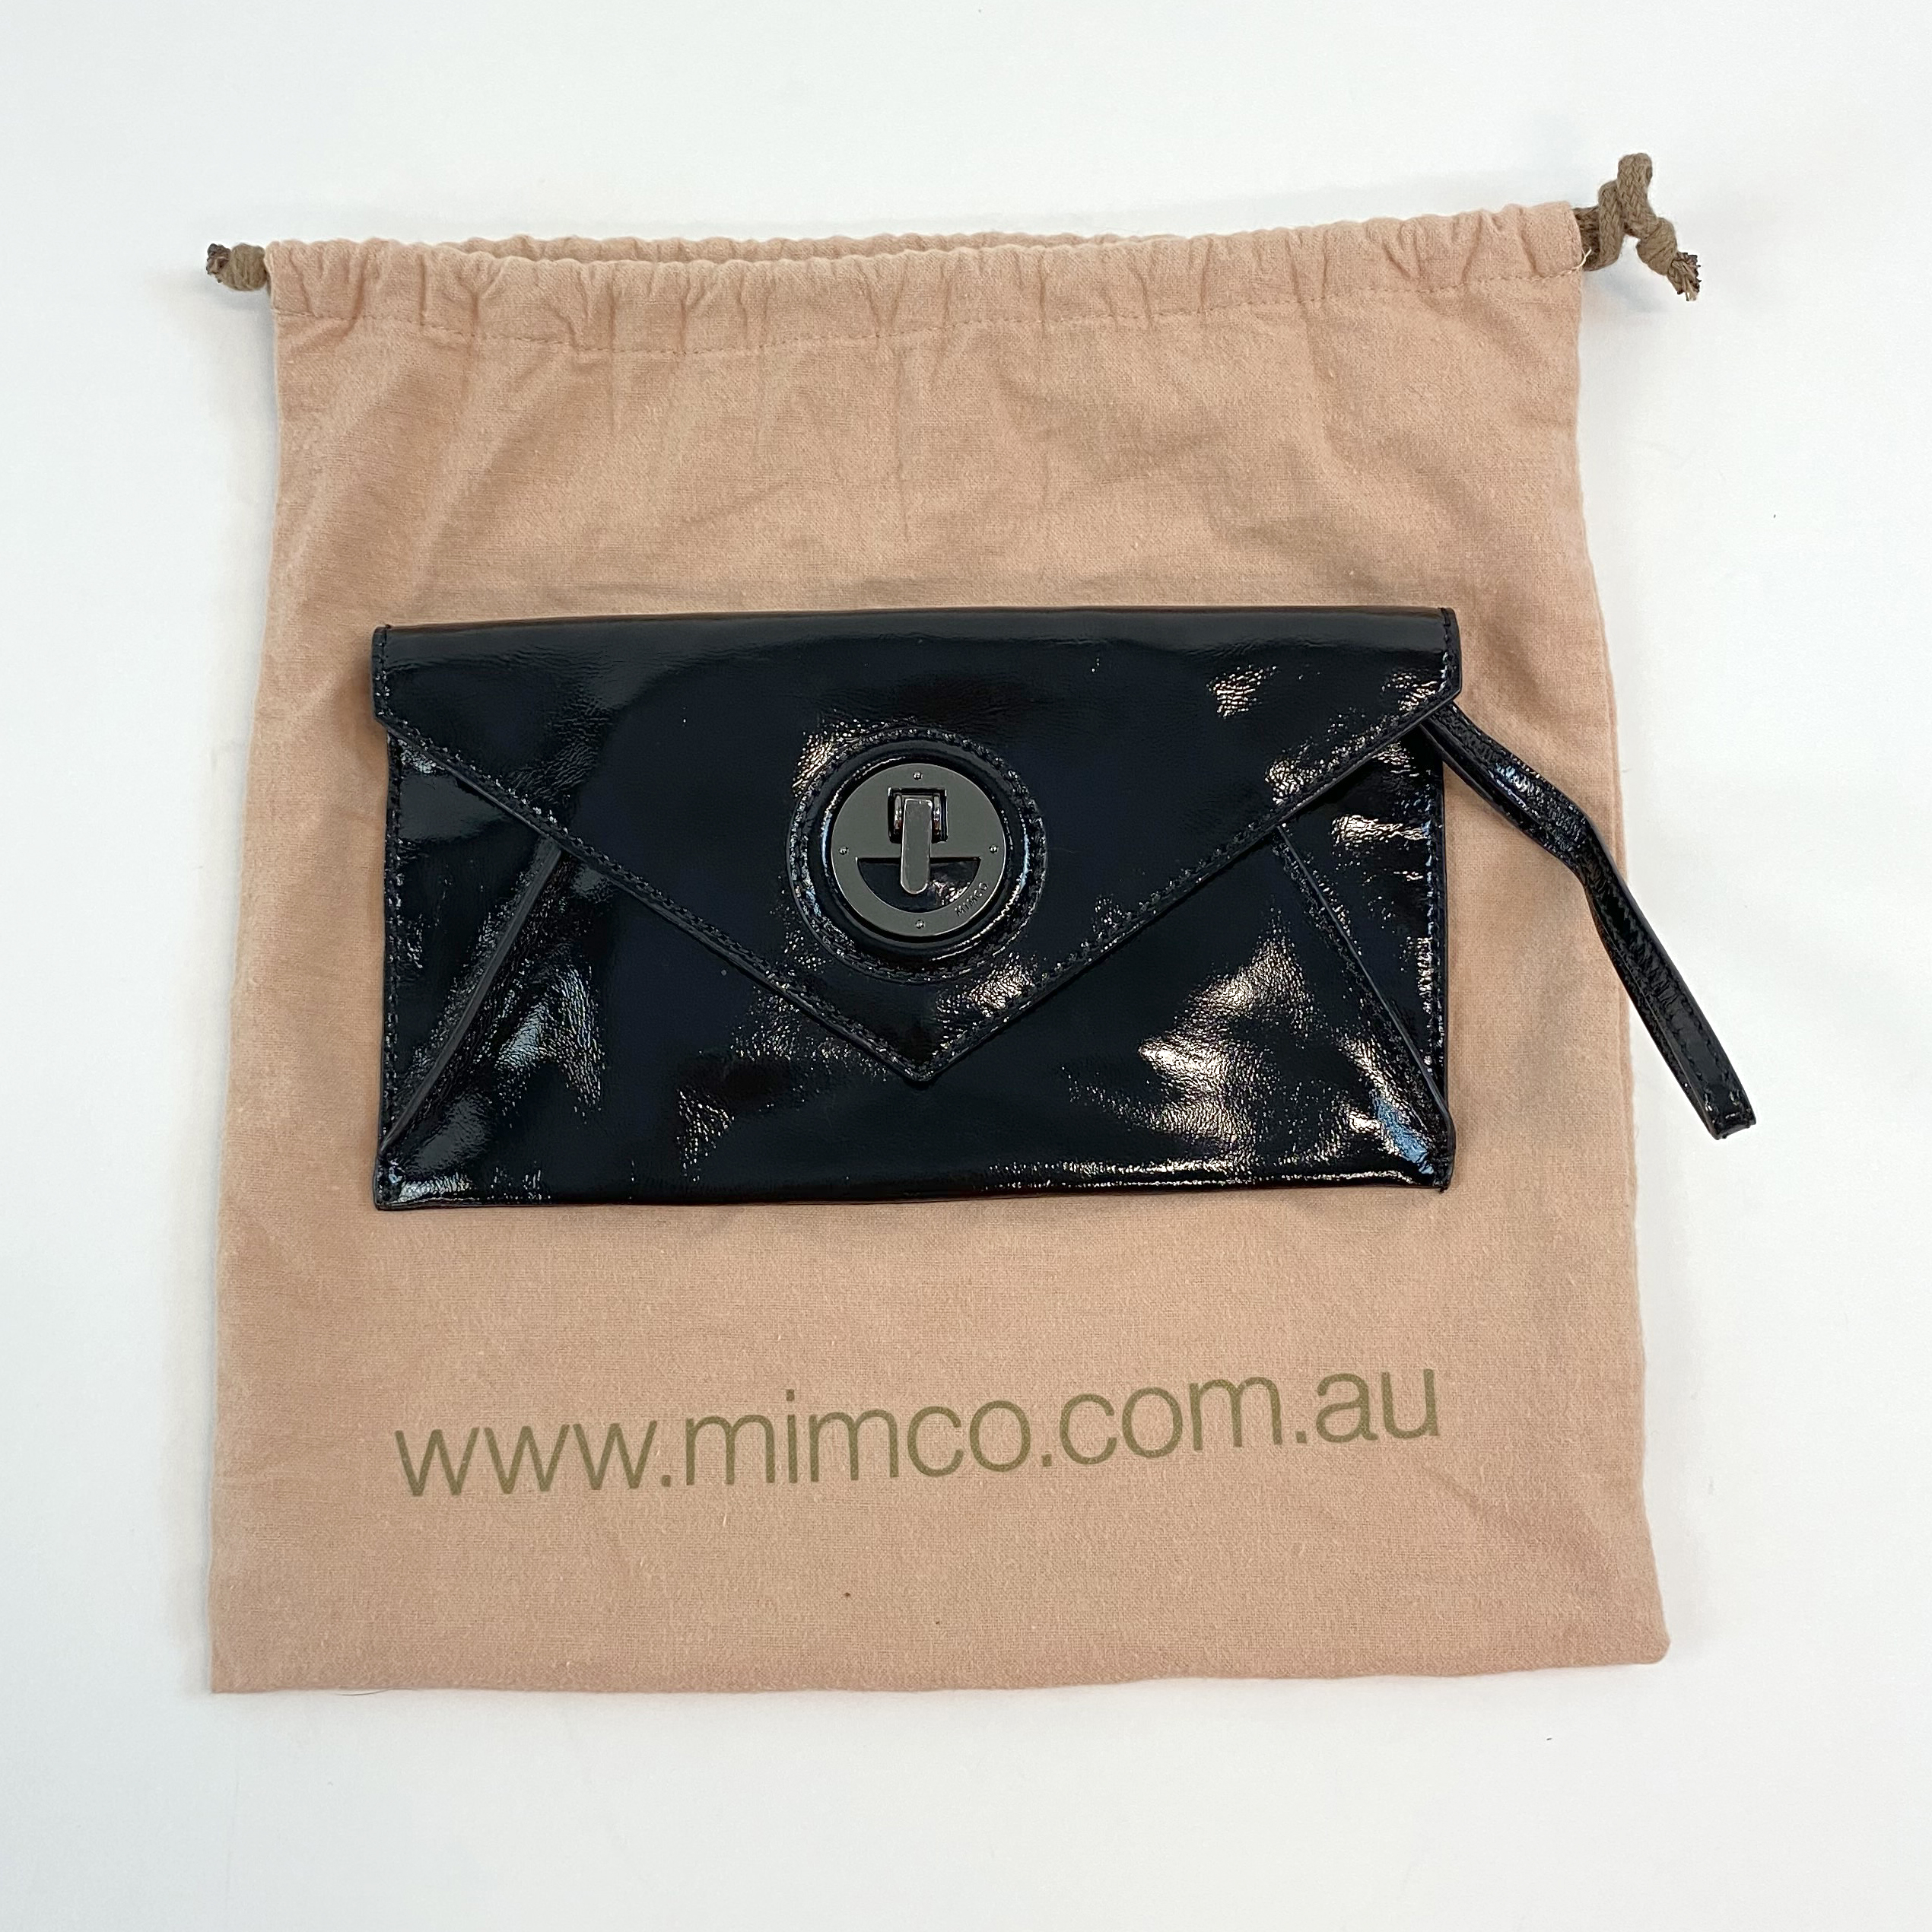 MIMCO Molten Envelope Clutch